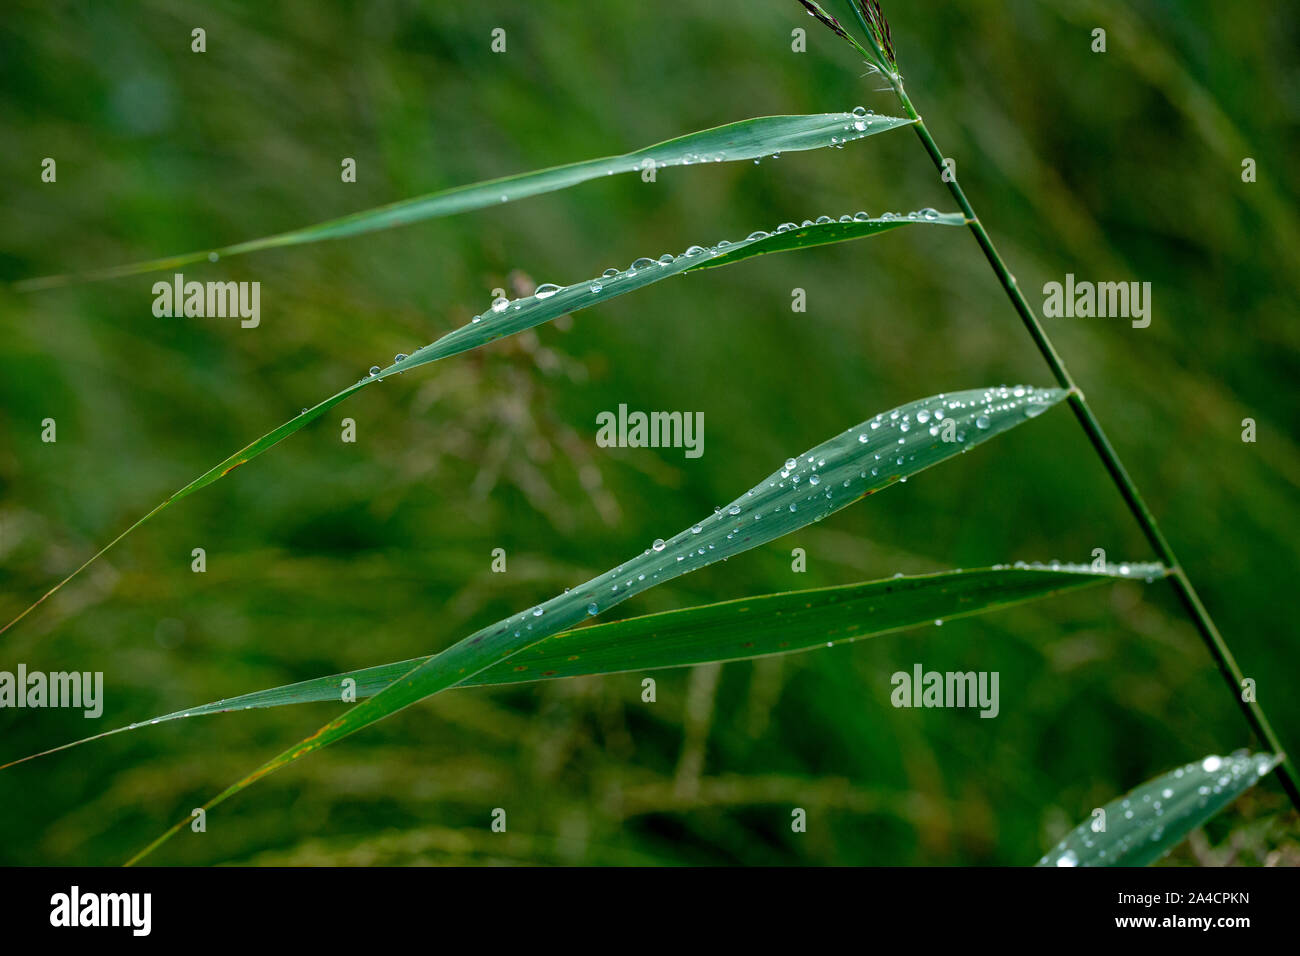 Gouttes de pluie sur les feuilles de roseau, (Phragmites australis). Gouttes d'eau. L'eau de pluie. La tension de surface. Le goutte-à-goutte, goutte, goutte, exécuter l'arrêt. Météo. Banque D'Images